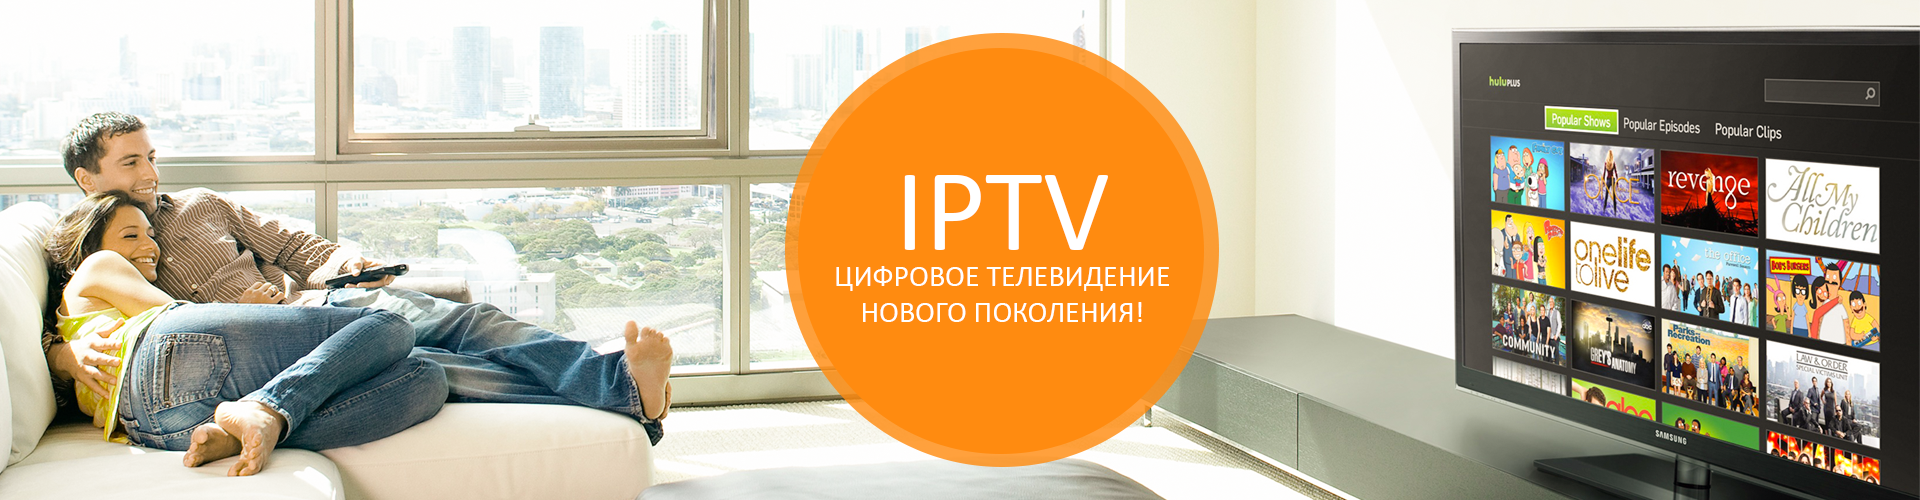 Бесплатная реклама по телевизору. Интернет Телевидение. IP Телевидение. Интернет Телевидение IPTV. Реклама IPTV.